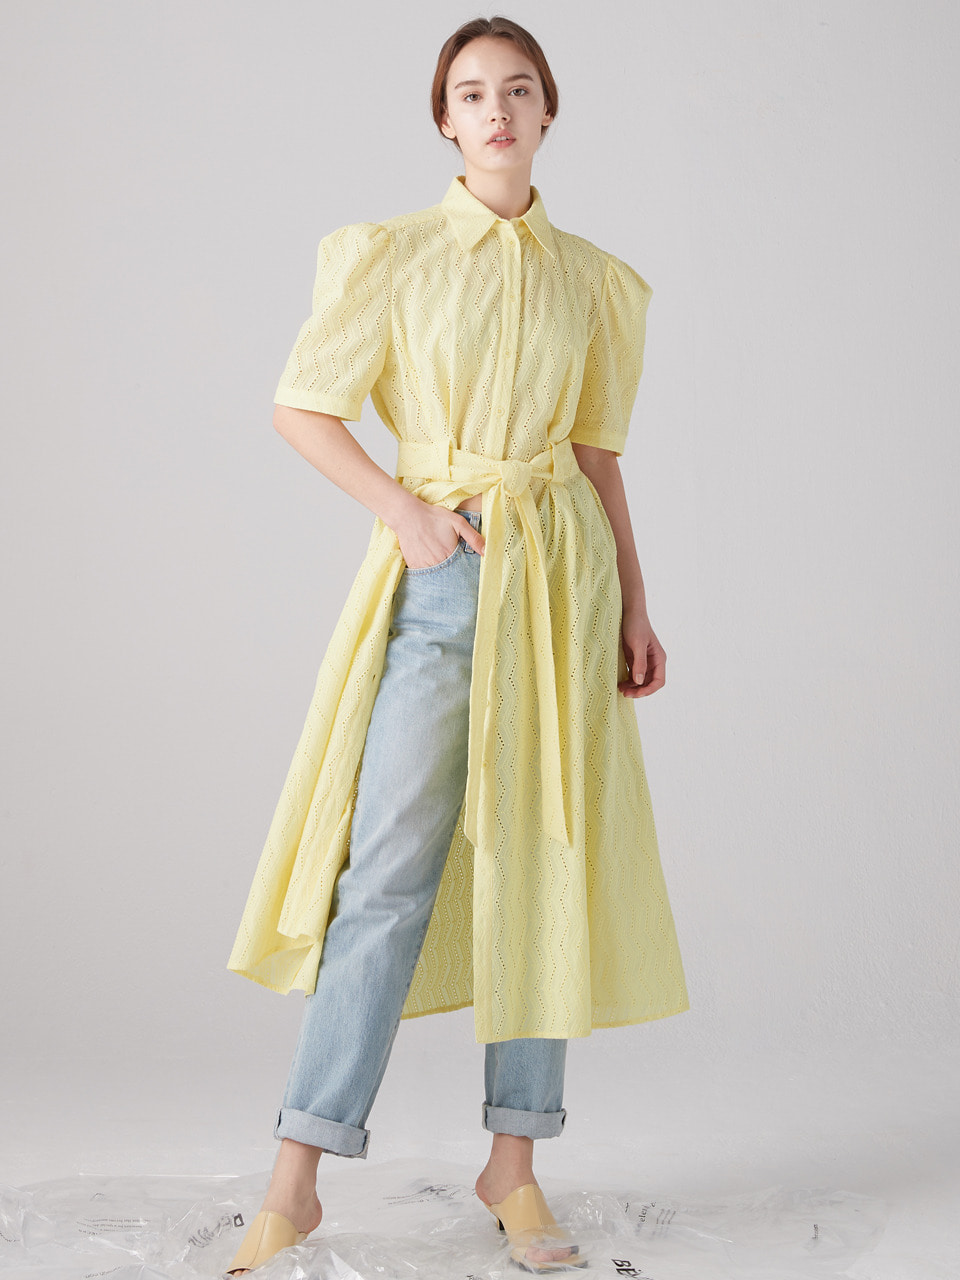 Eyelet shirts dress - Lemon